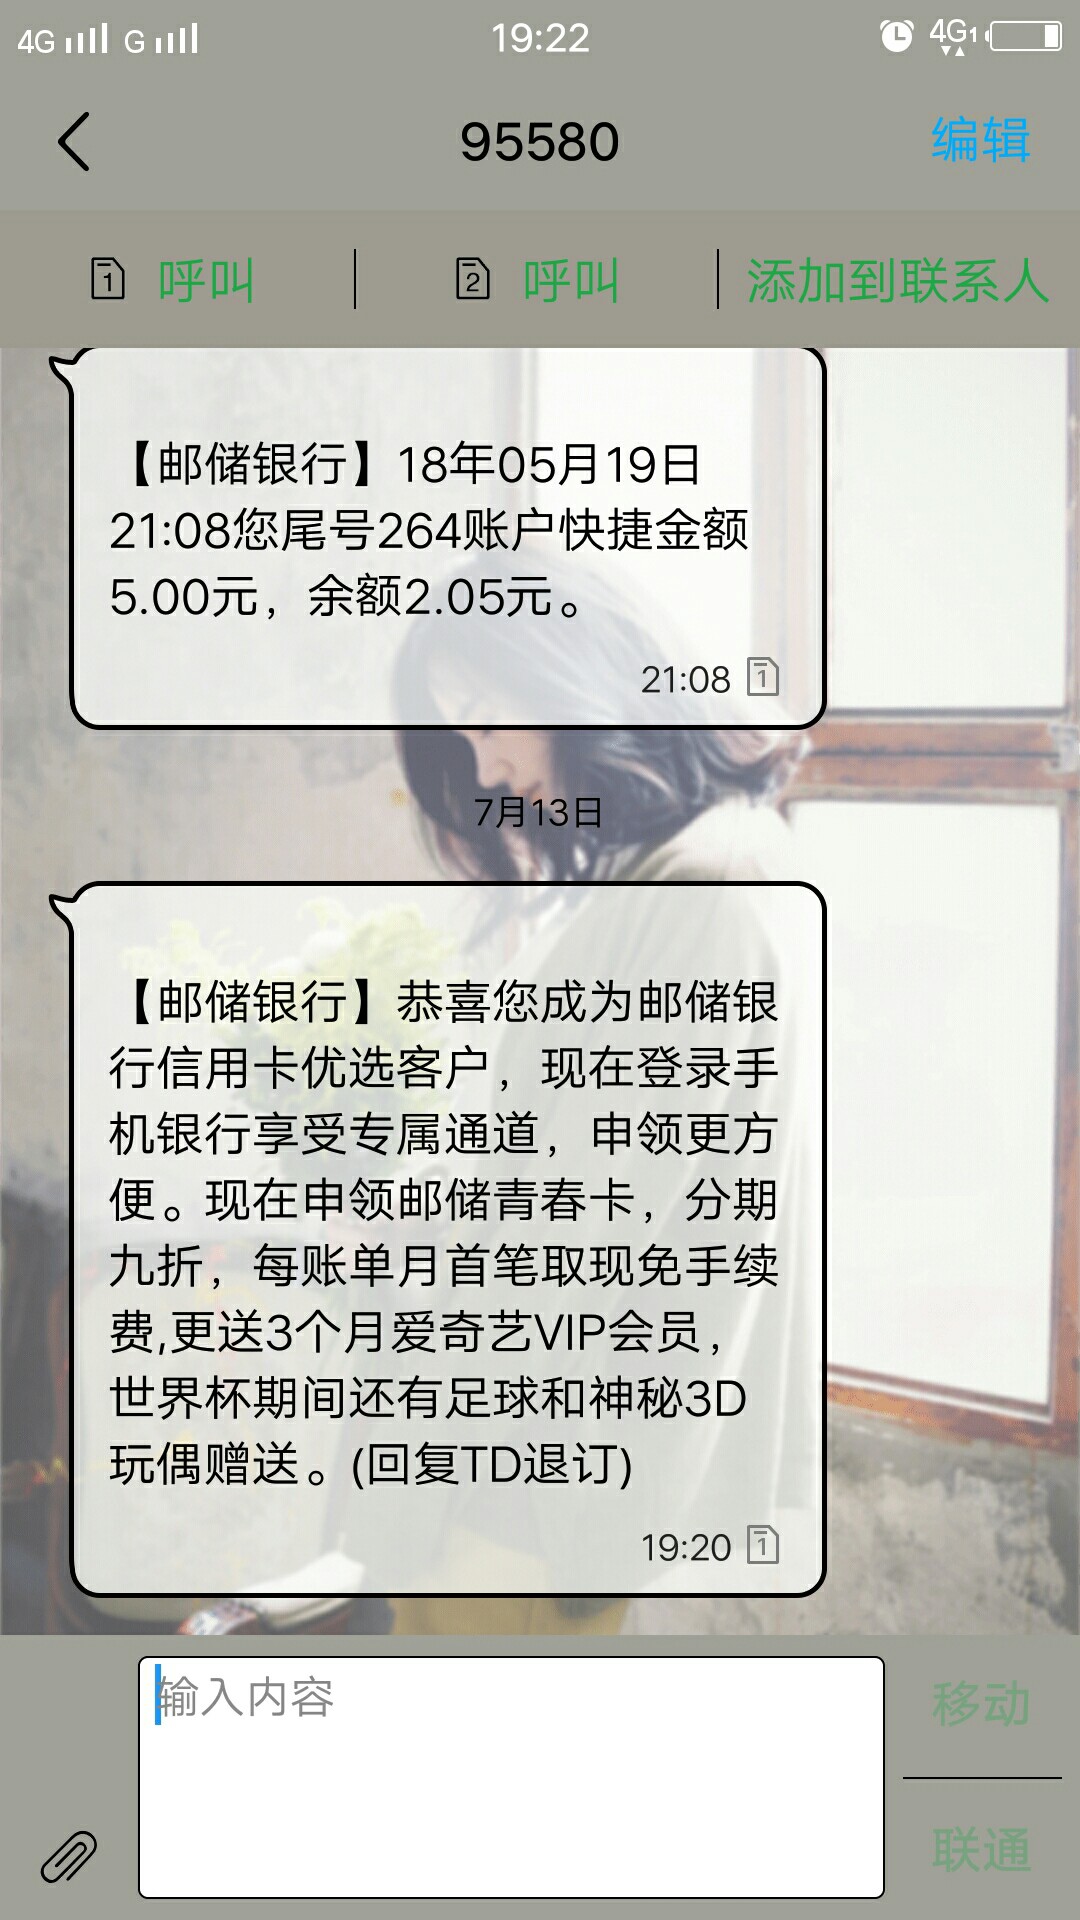 95580中国邮政银行发的吗?这是中国邮政银行发的短信吗?